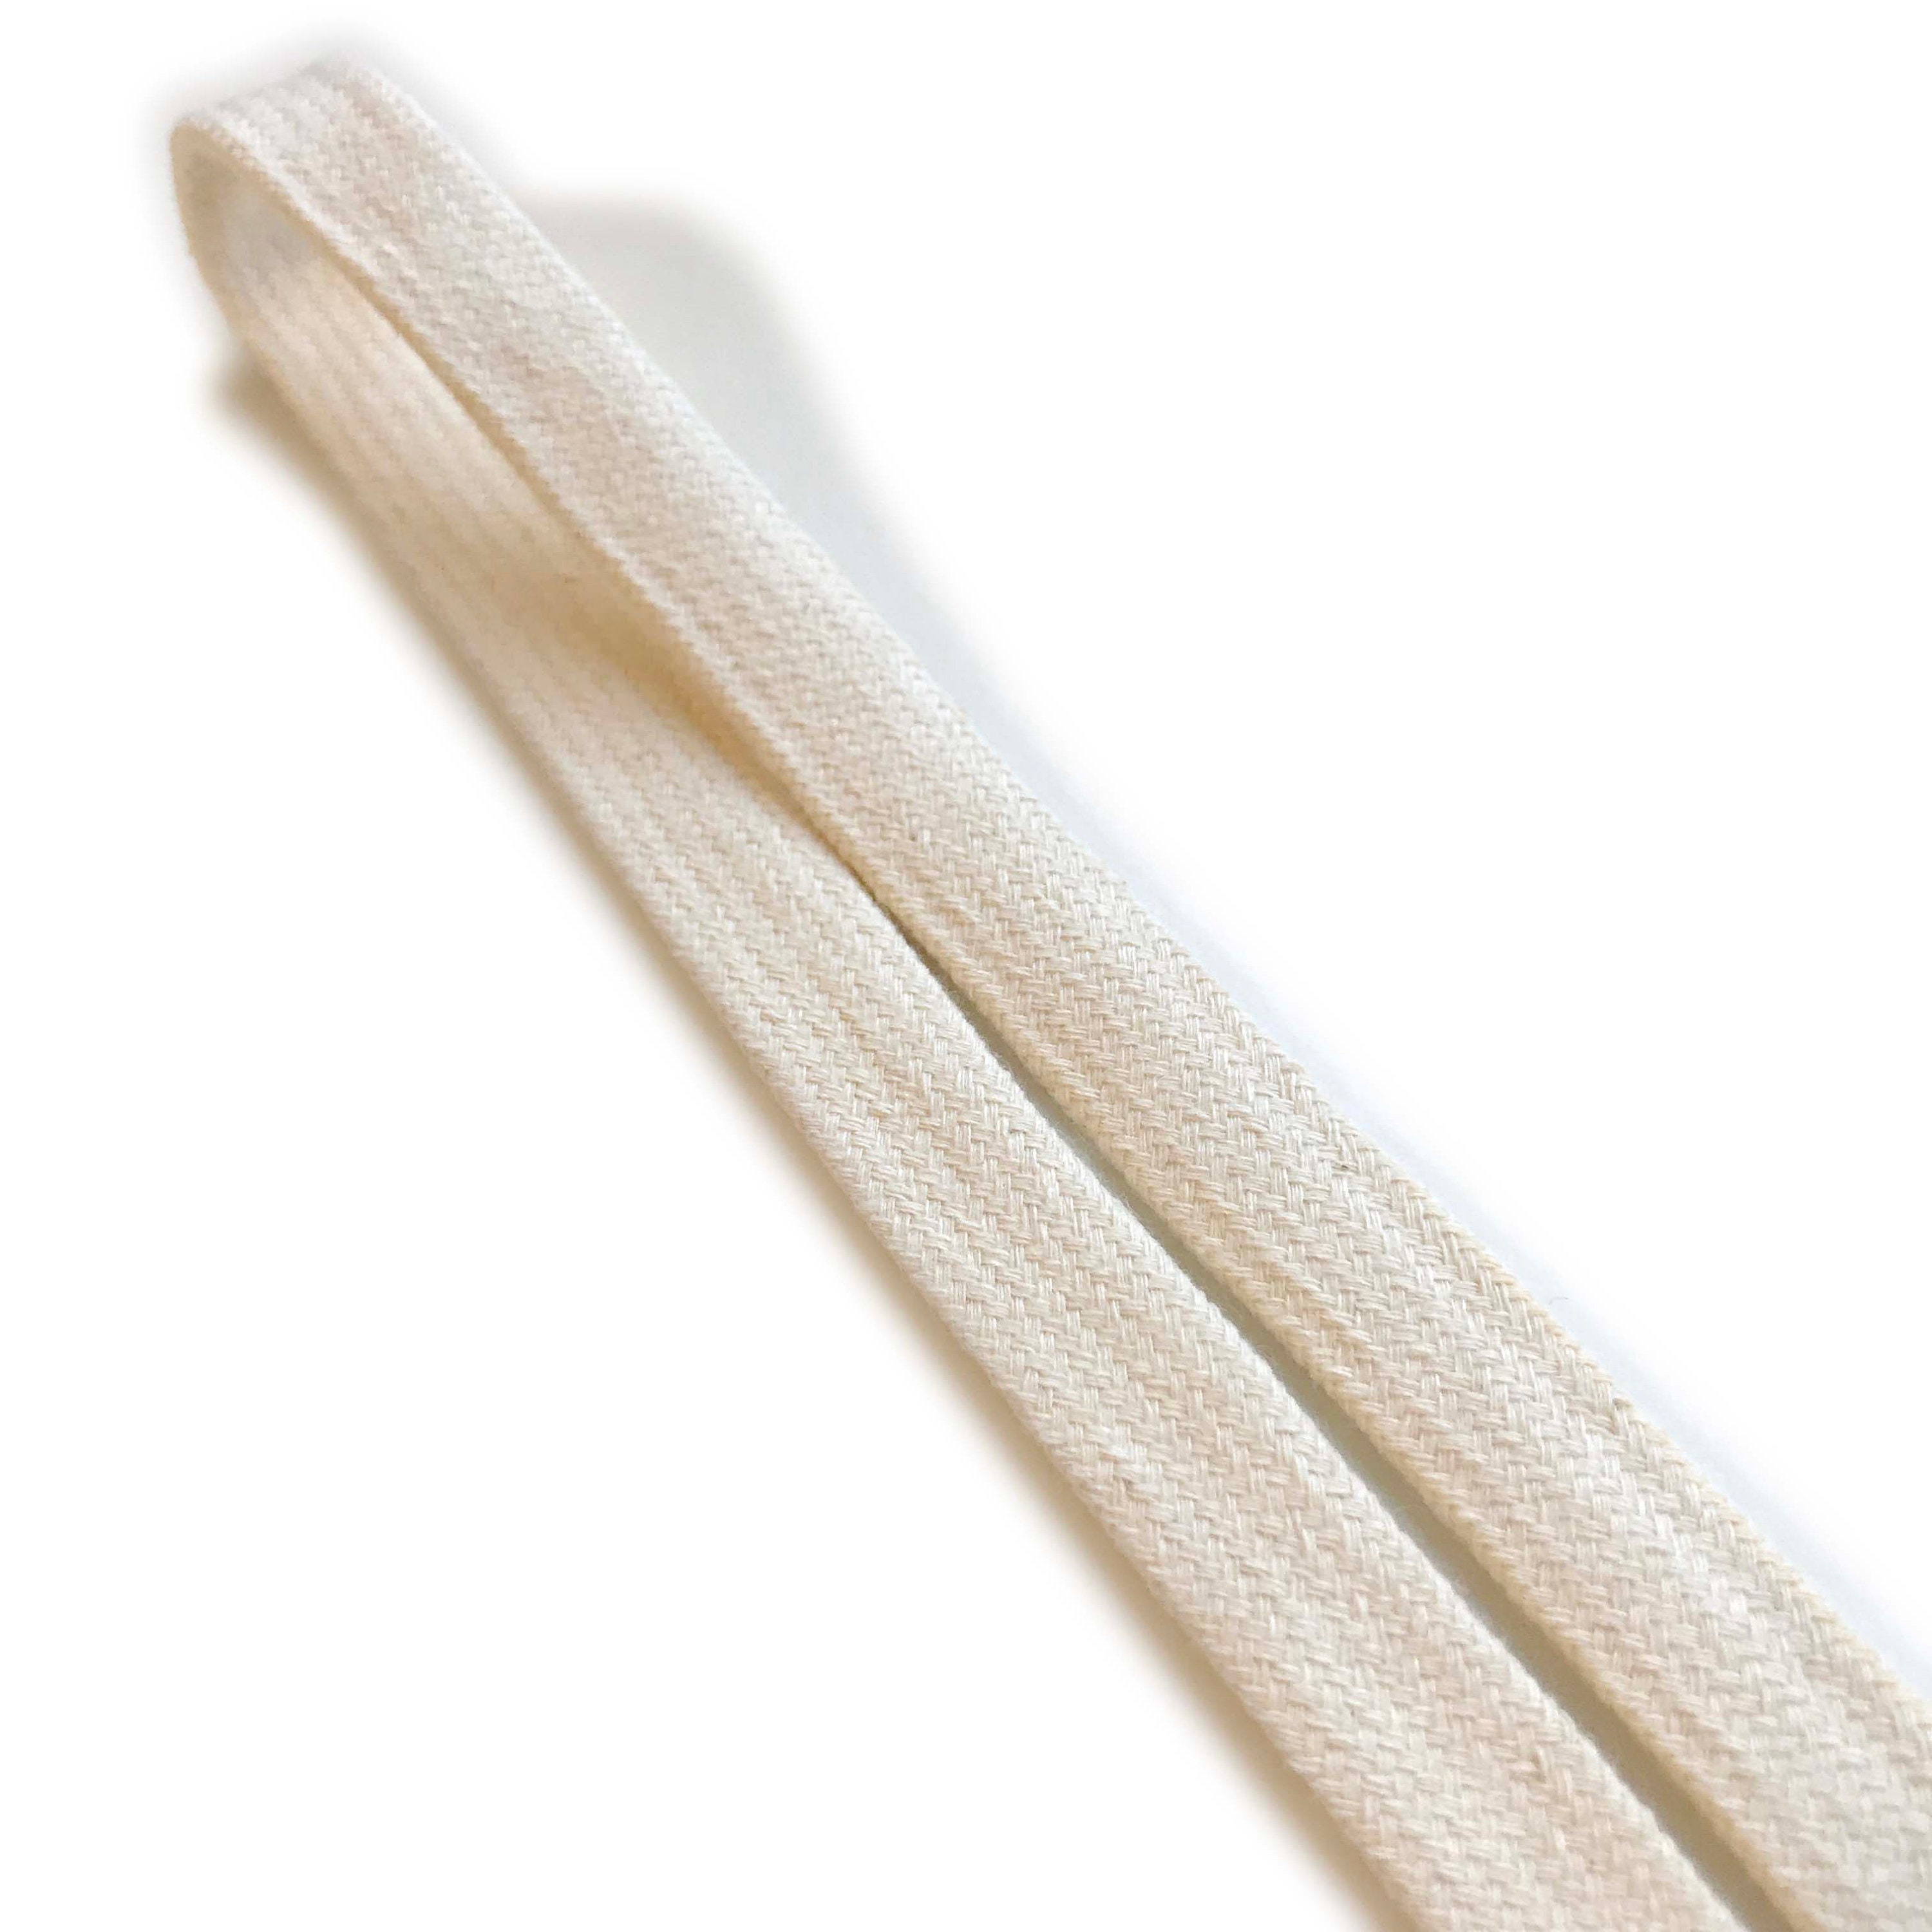 Off White Cotton Small Pom Pom lace trim 1/2 (LT14)